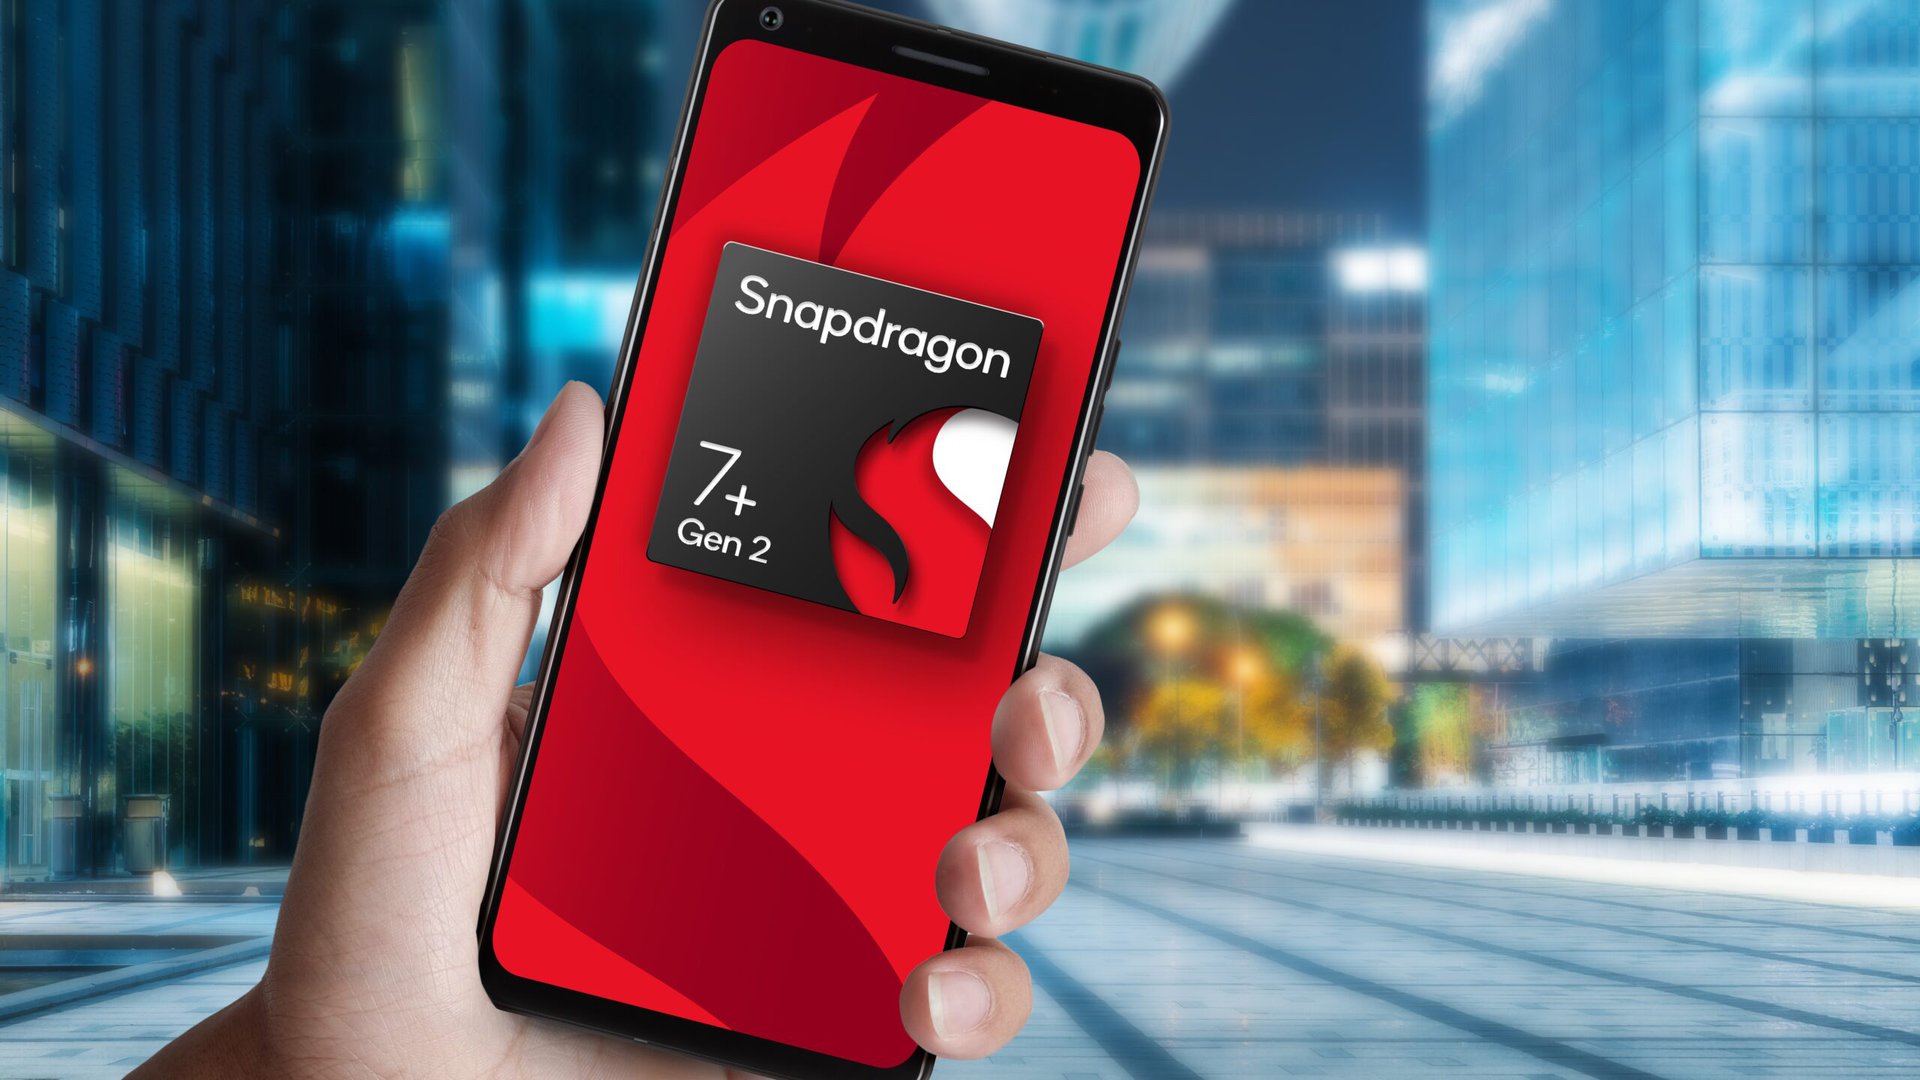 Snapdragon 7 Plus Gen 2 reference design